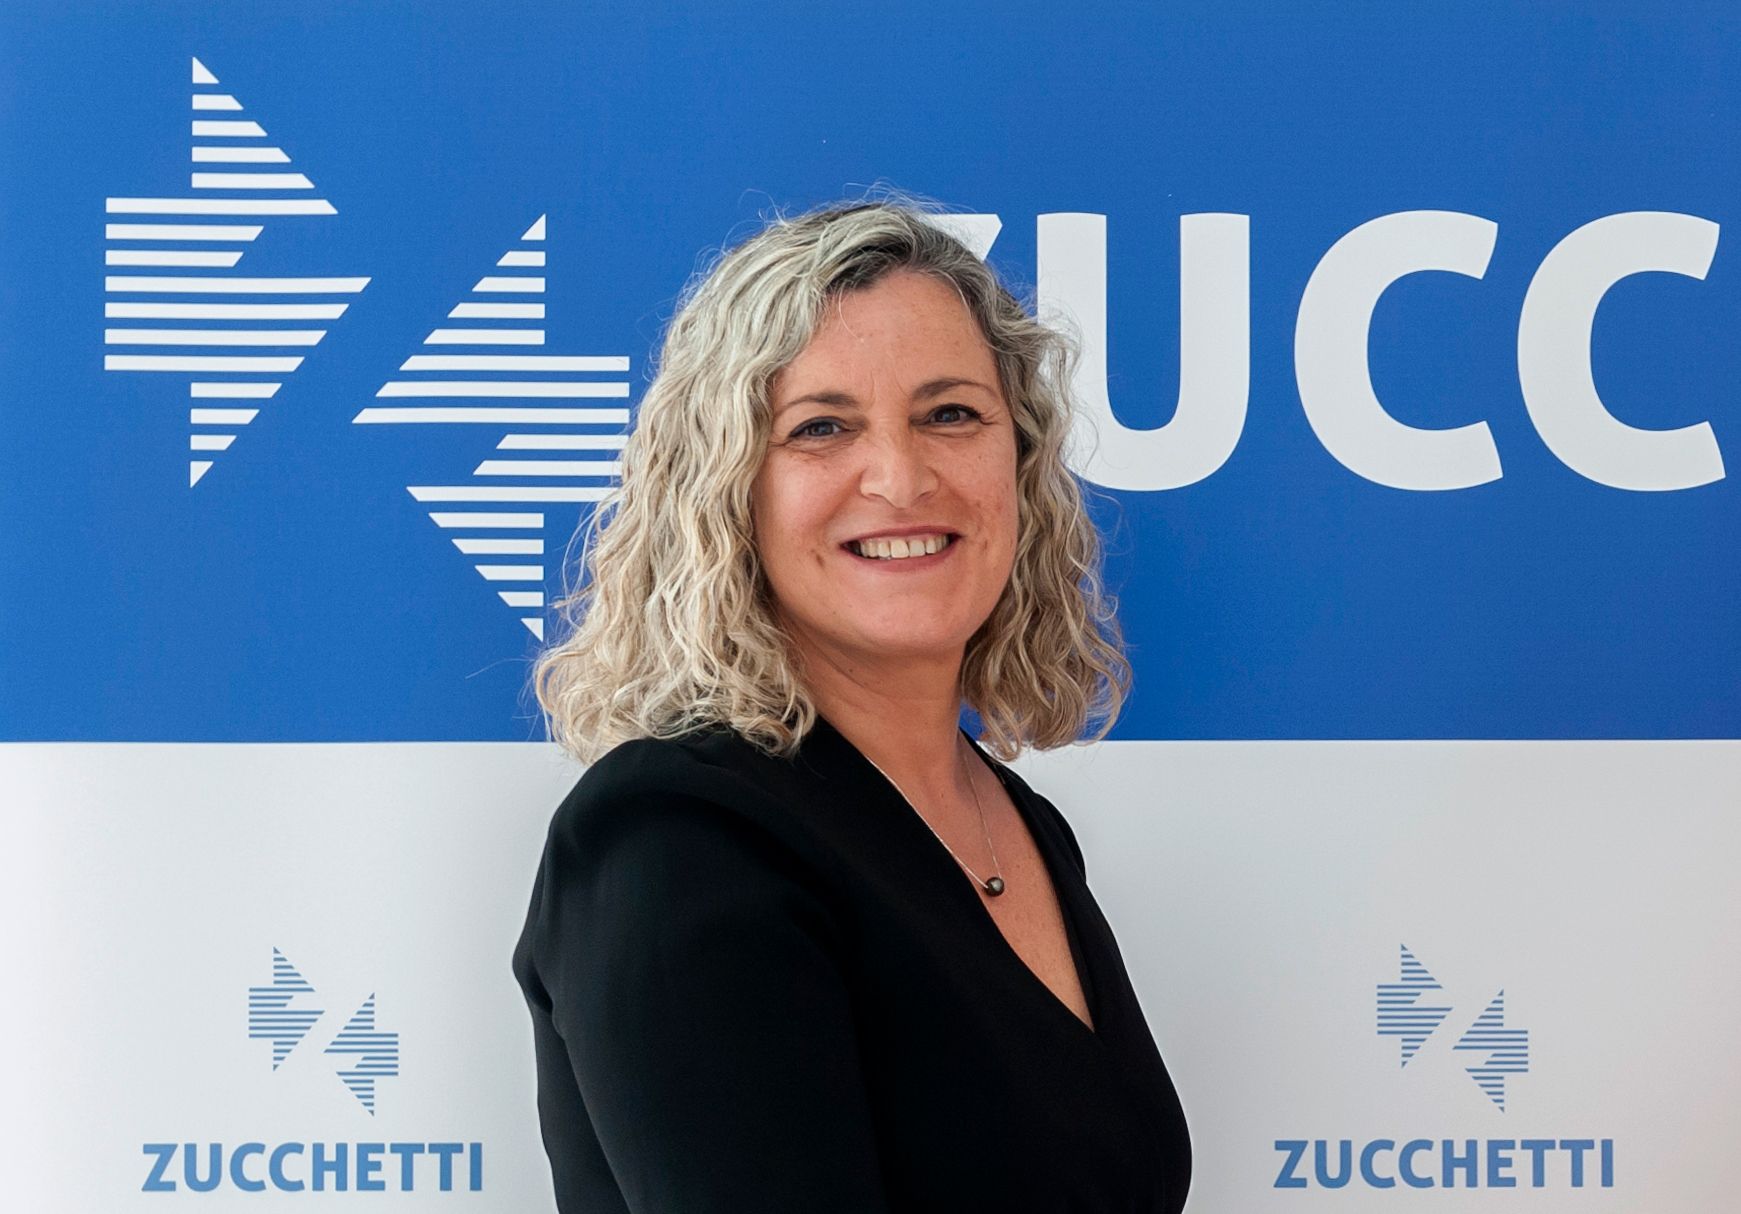 La subdirectora general de Zucchetti Spain, Isabel Busto, nueva presidenta de Confebask